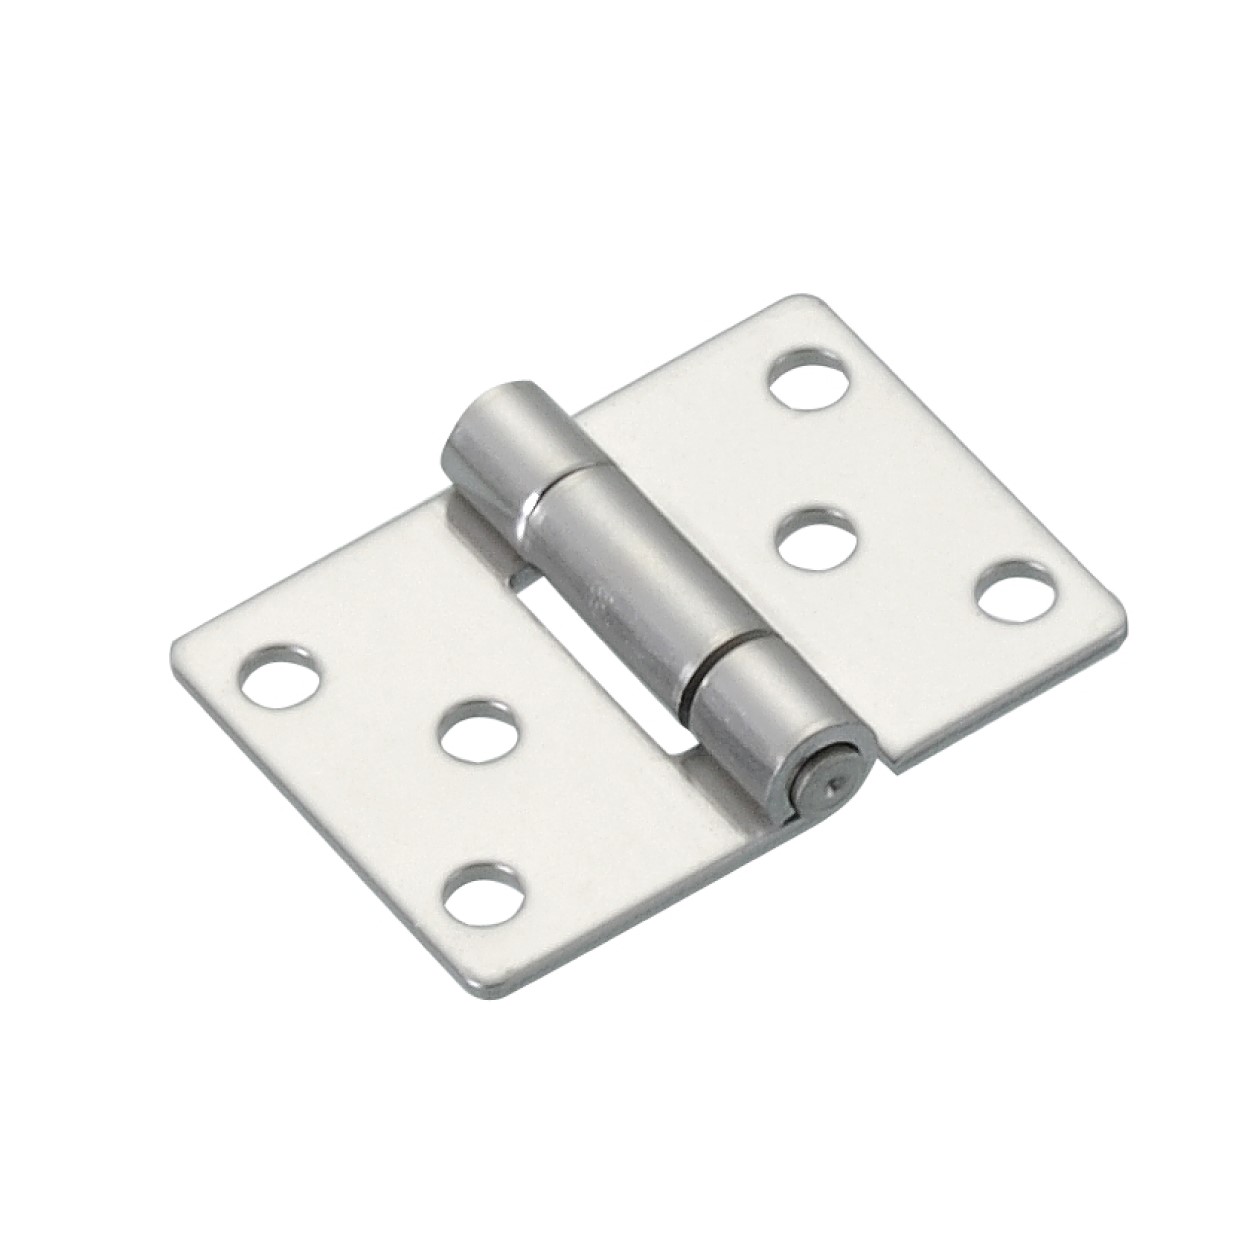 小型平面鉸鏈 AS(T)-1520  不鏽鋼/鋼製 AS-1520